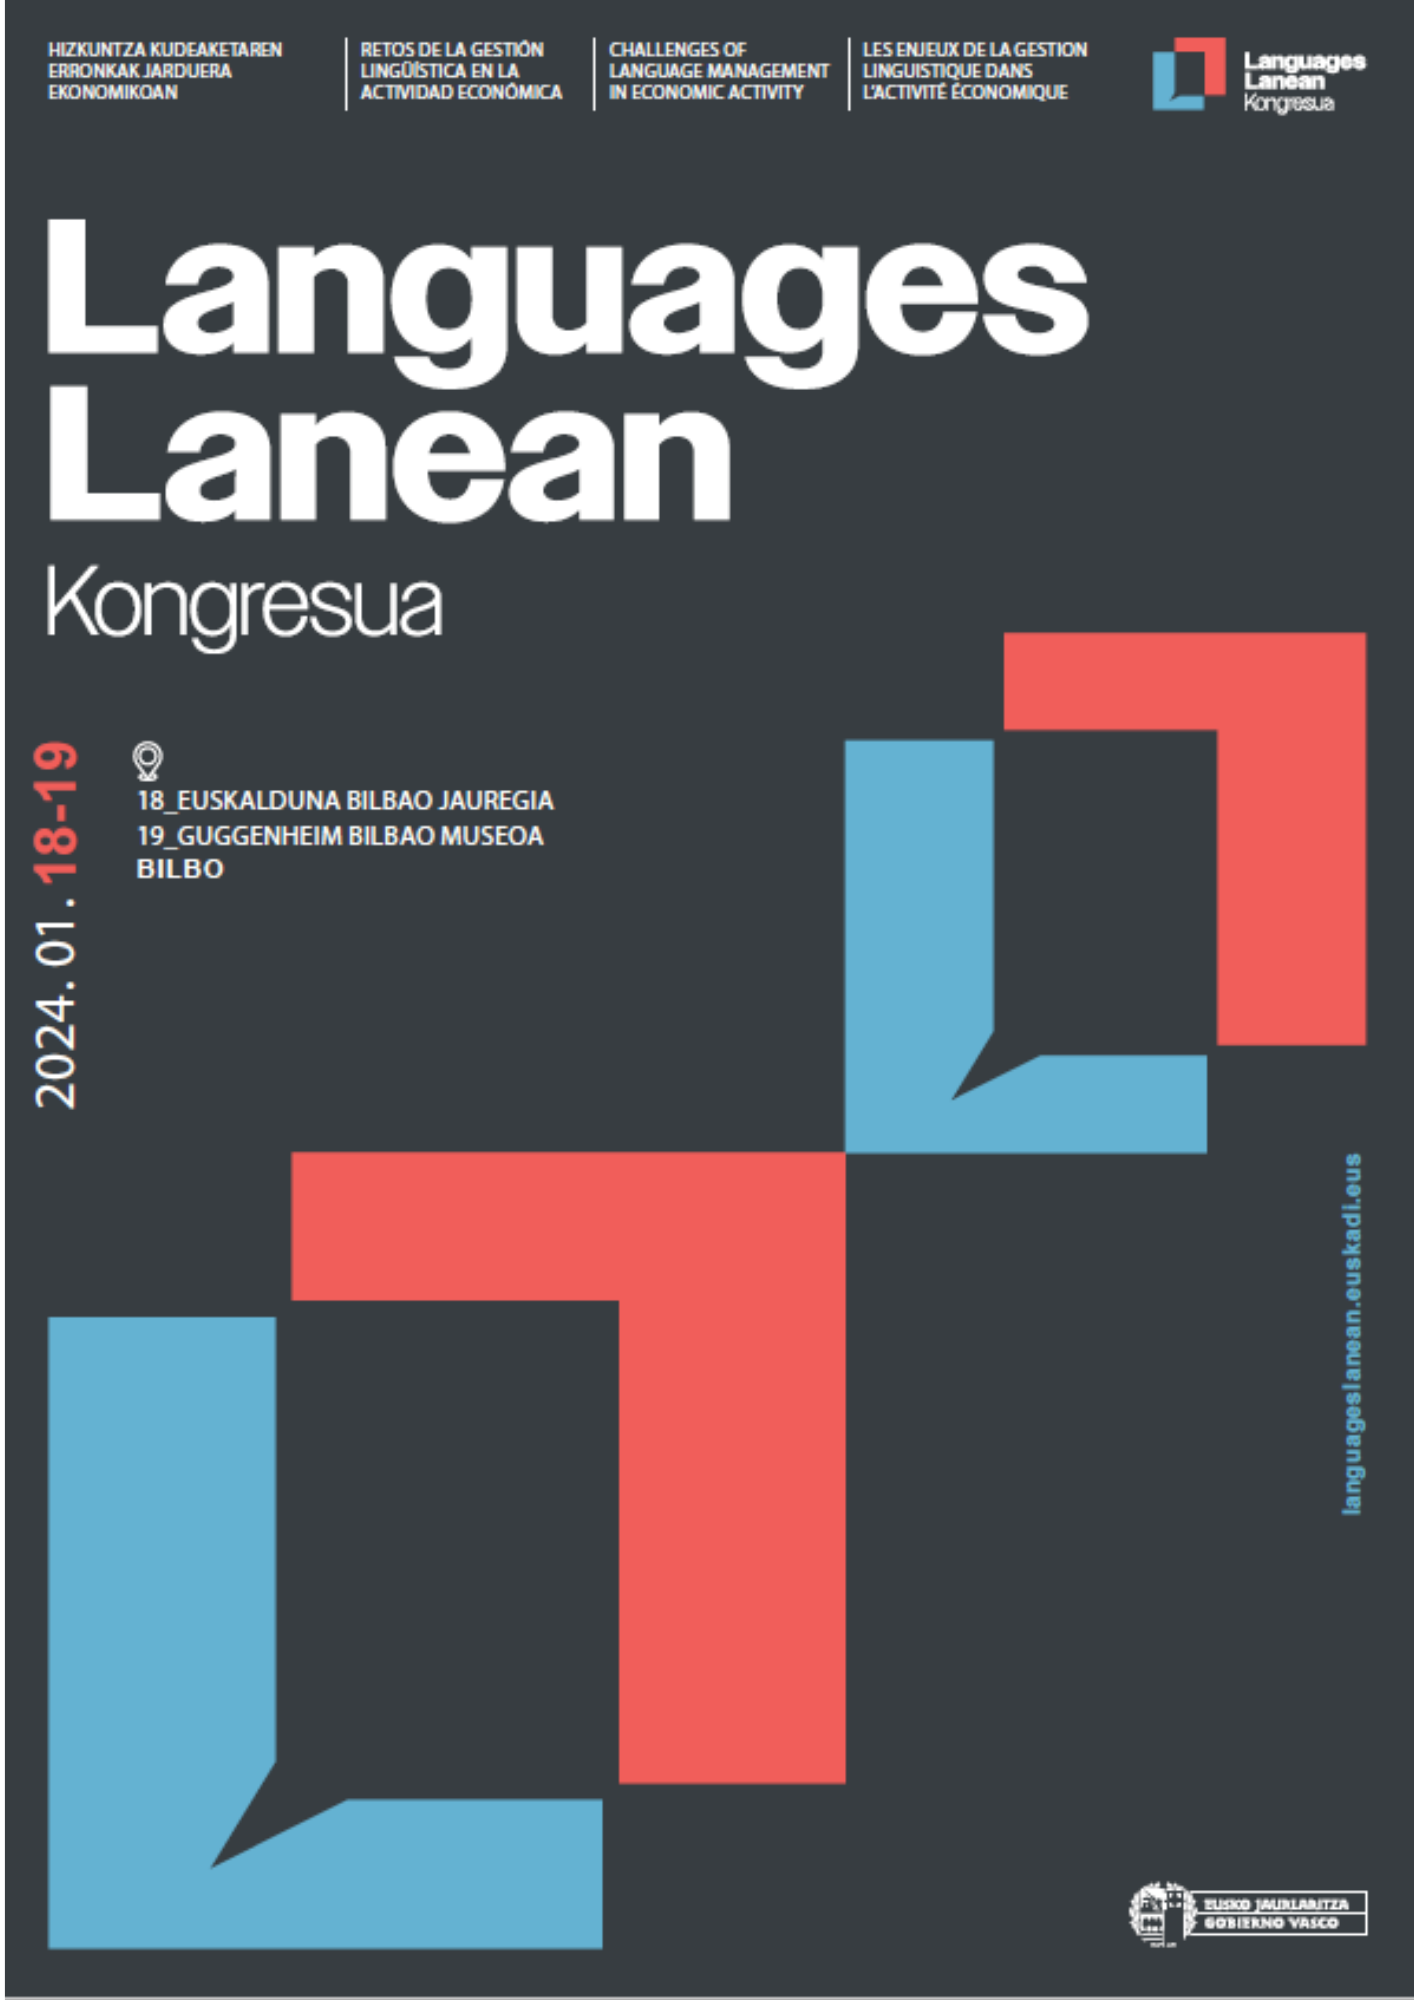 Cartel anunciador congreso Languages Lanean